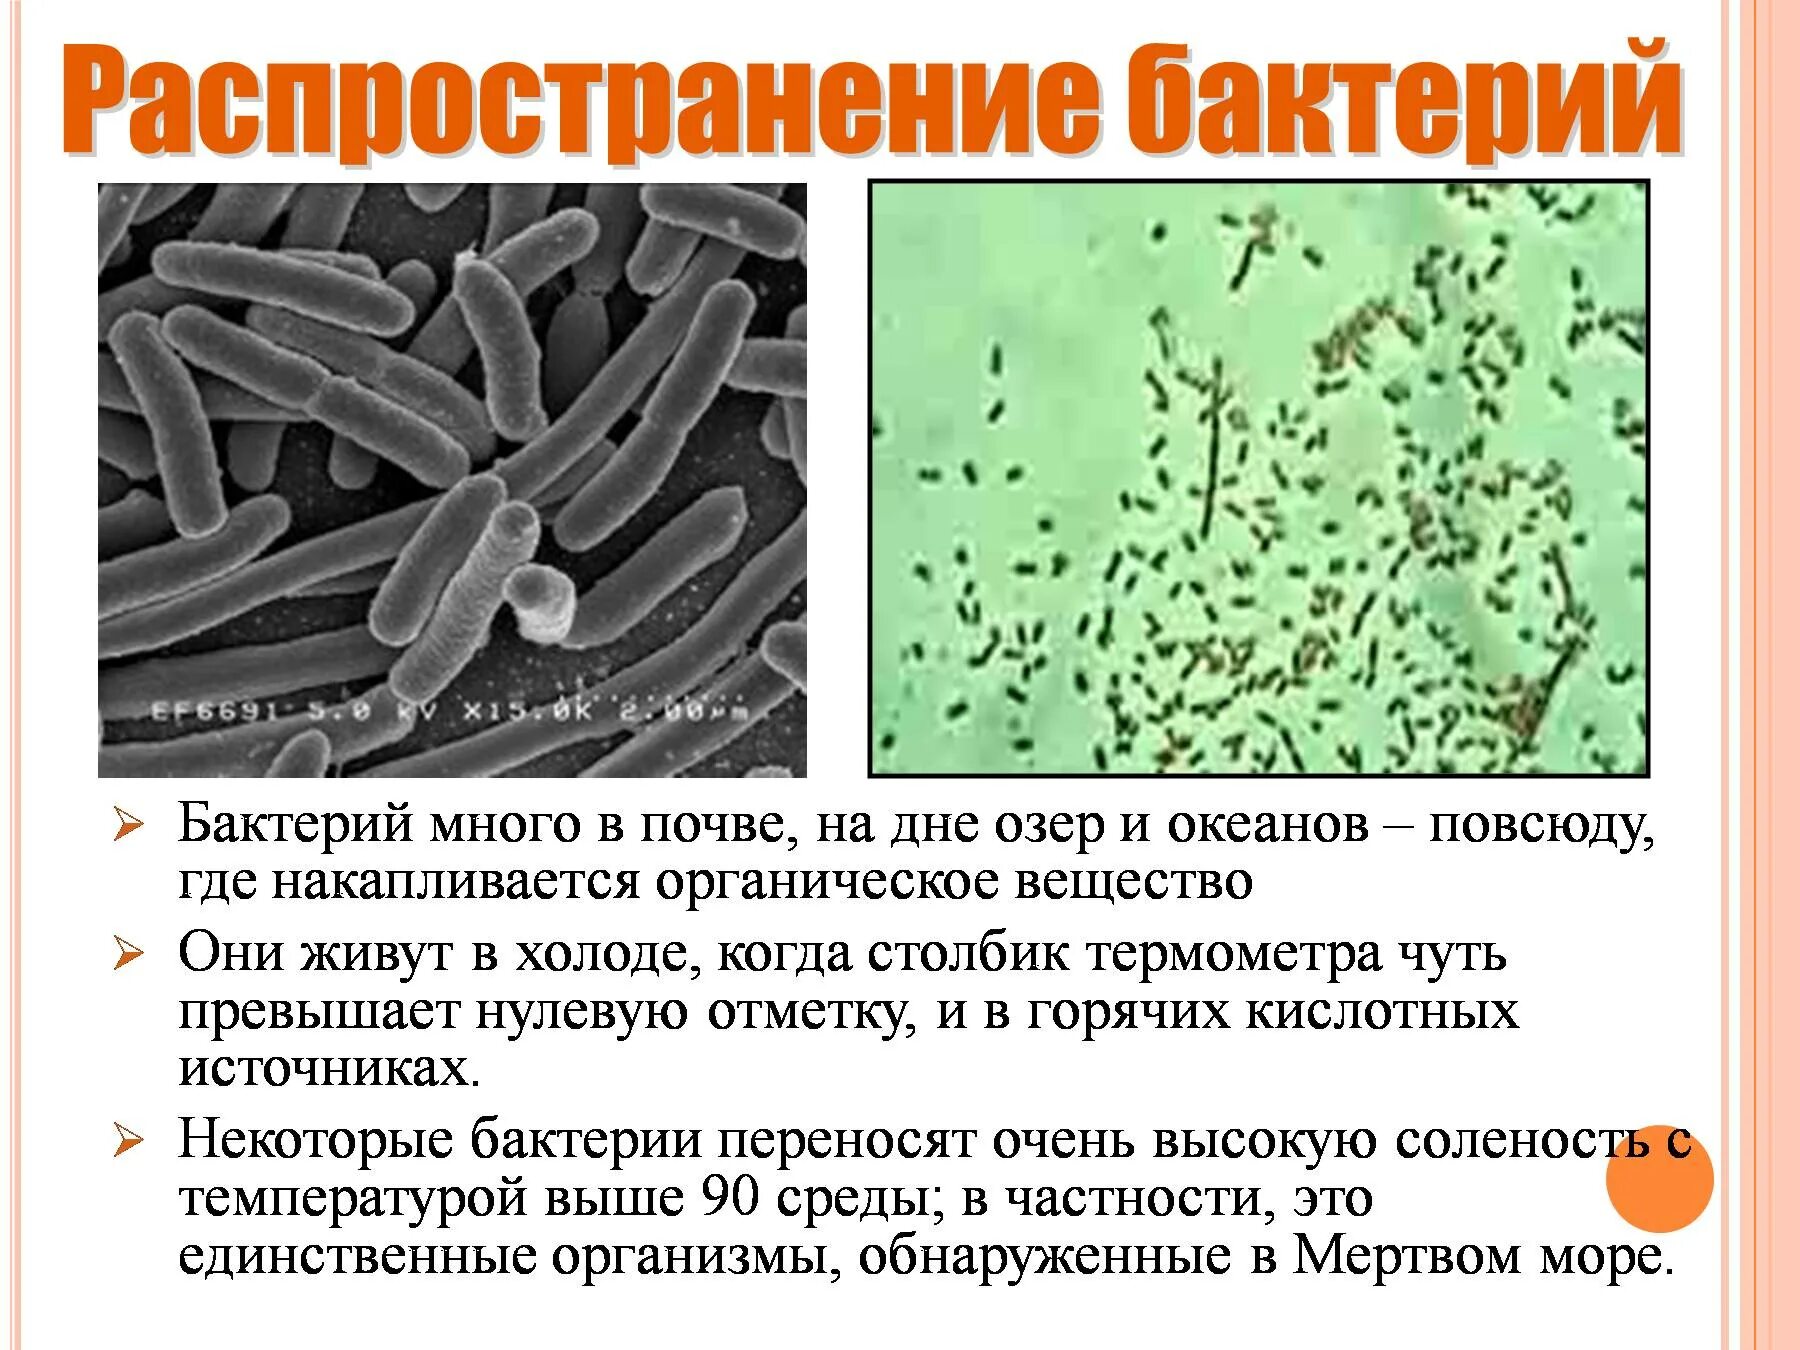 Какие условия способствуют распространению бактерий. Царство бактерий 5 класс биология. Представители царства бактерий 5 класс. Характеристика царства бактерий 5 класс. Характеристика бактерий 5 класс биология.